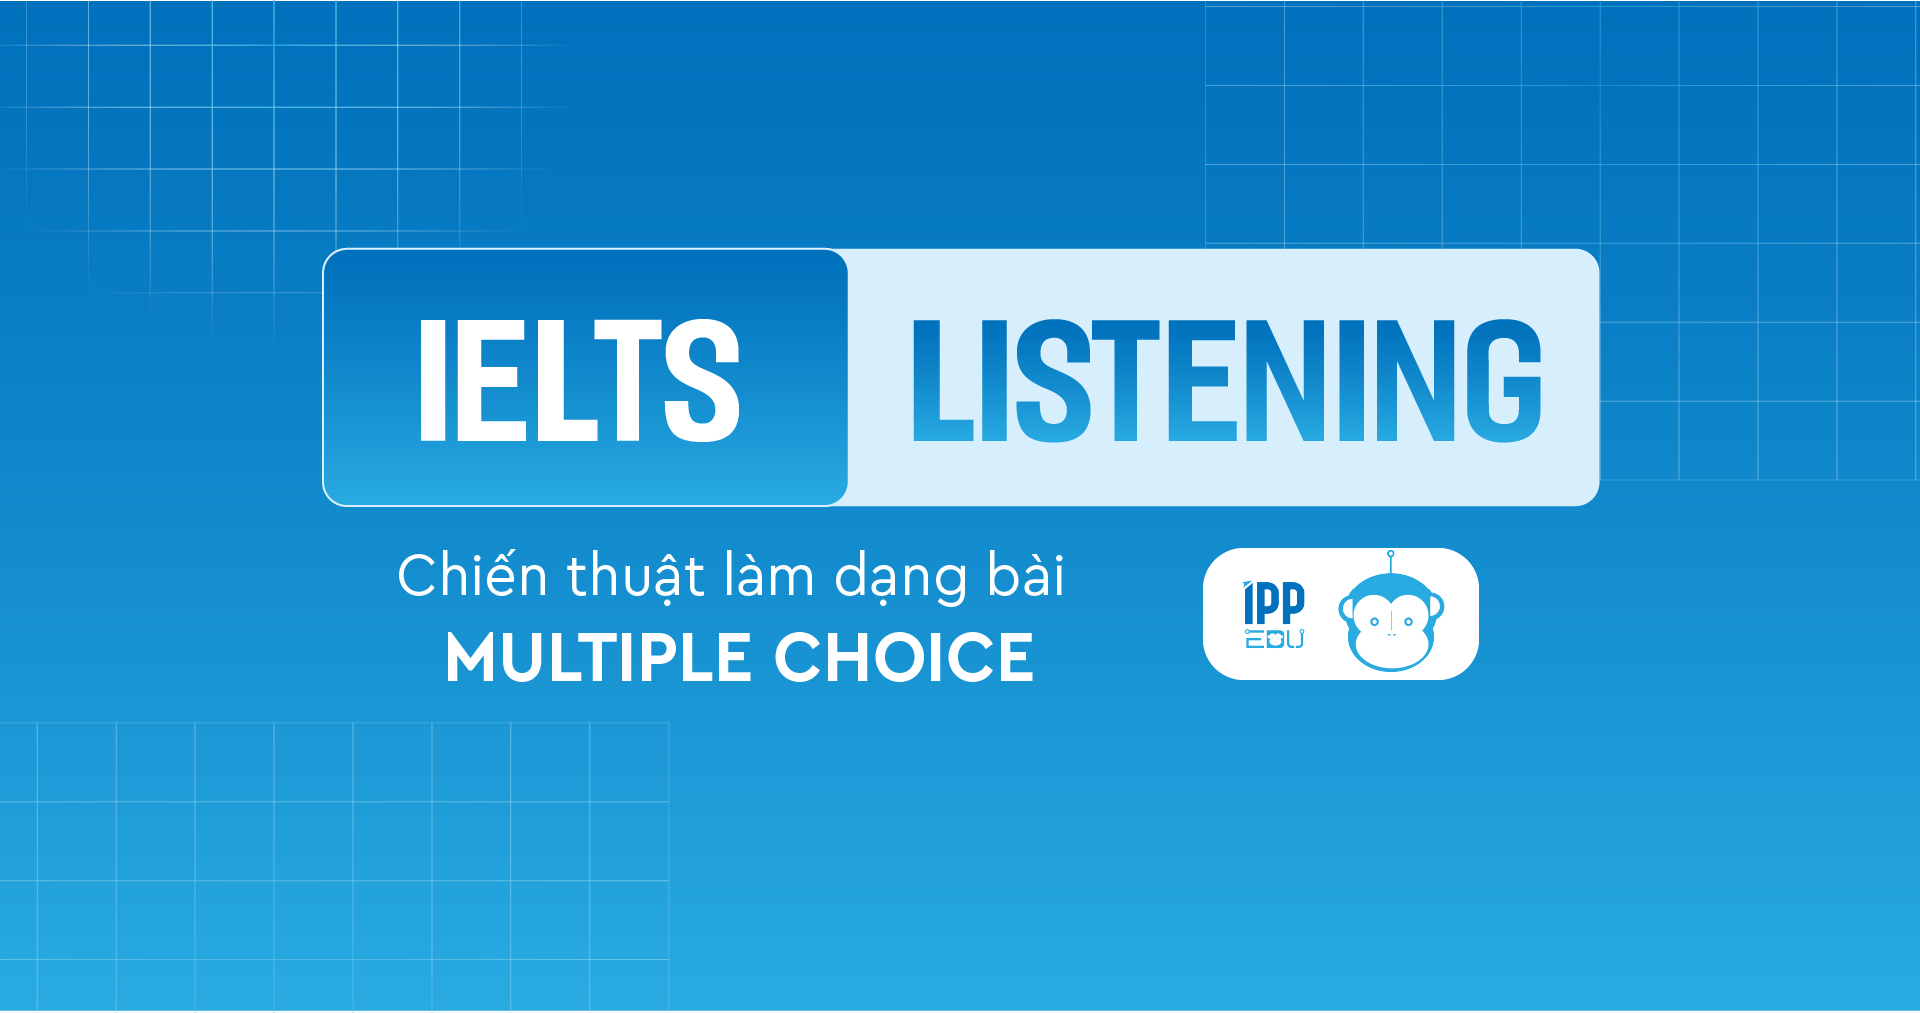 Chiến thuật làm dạng bài Multiple Choice trong IELTS Listening